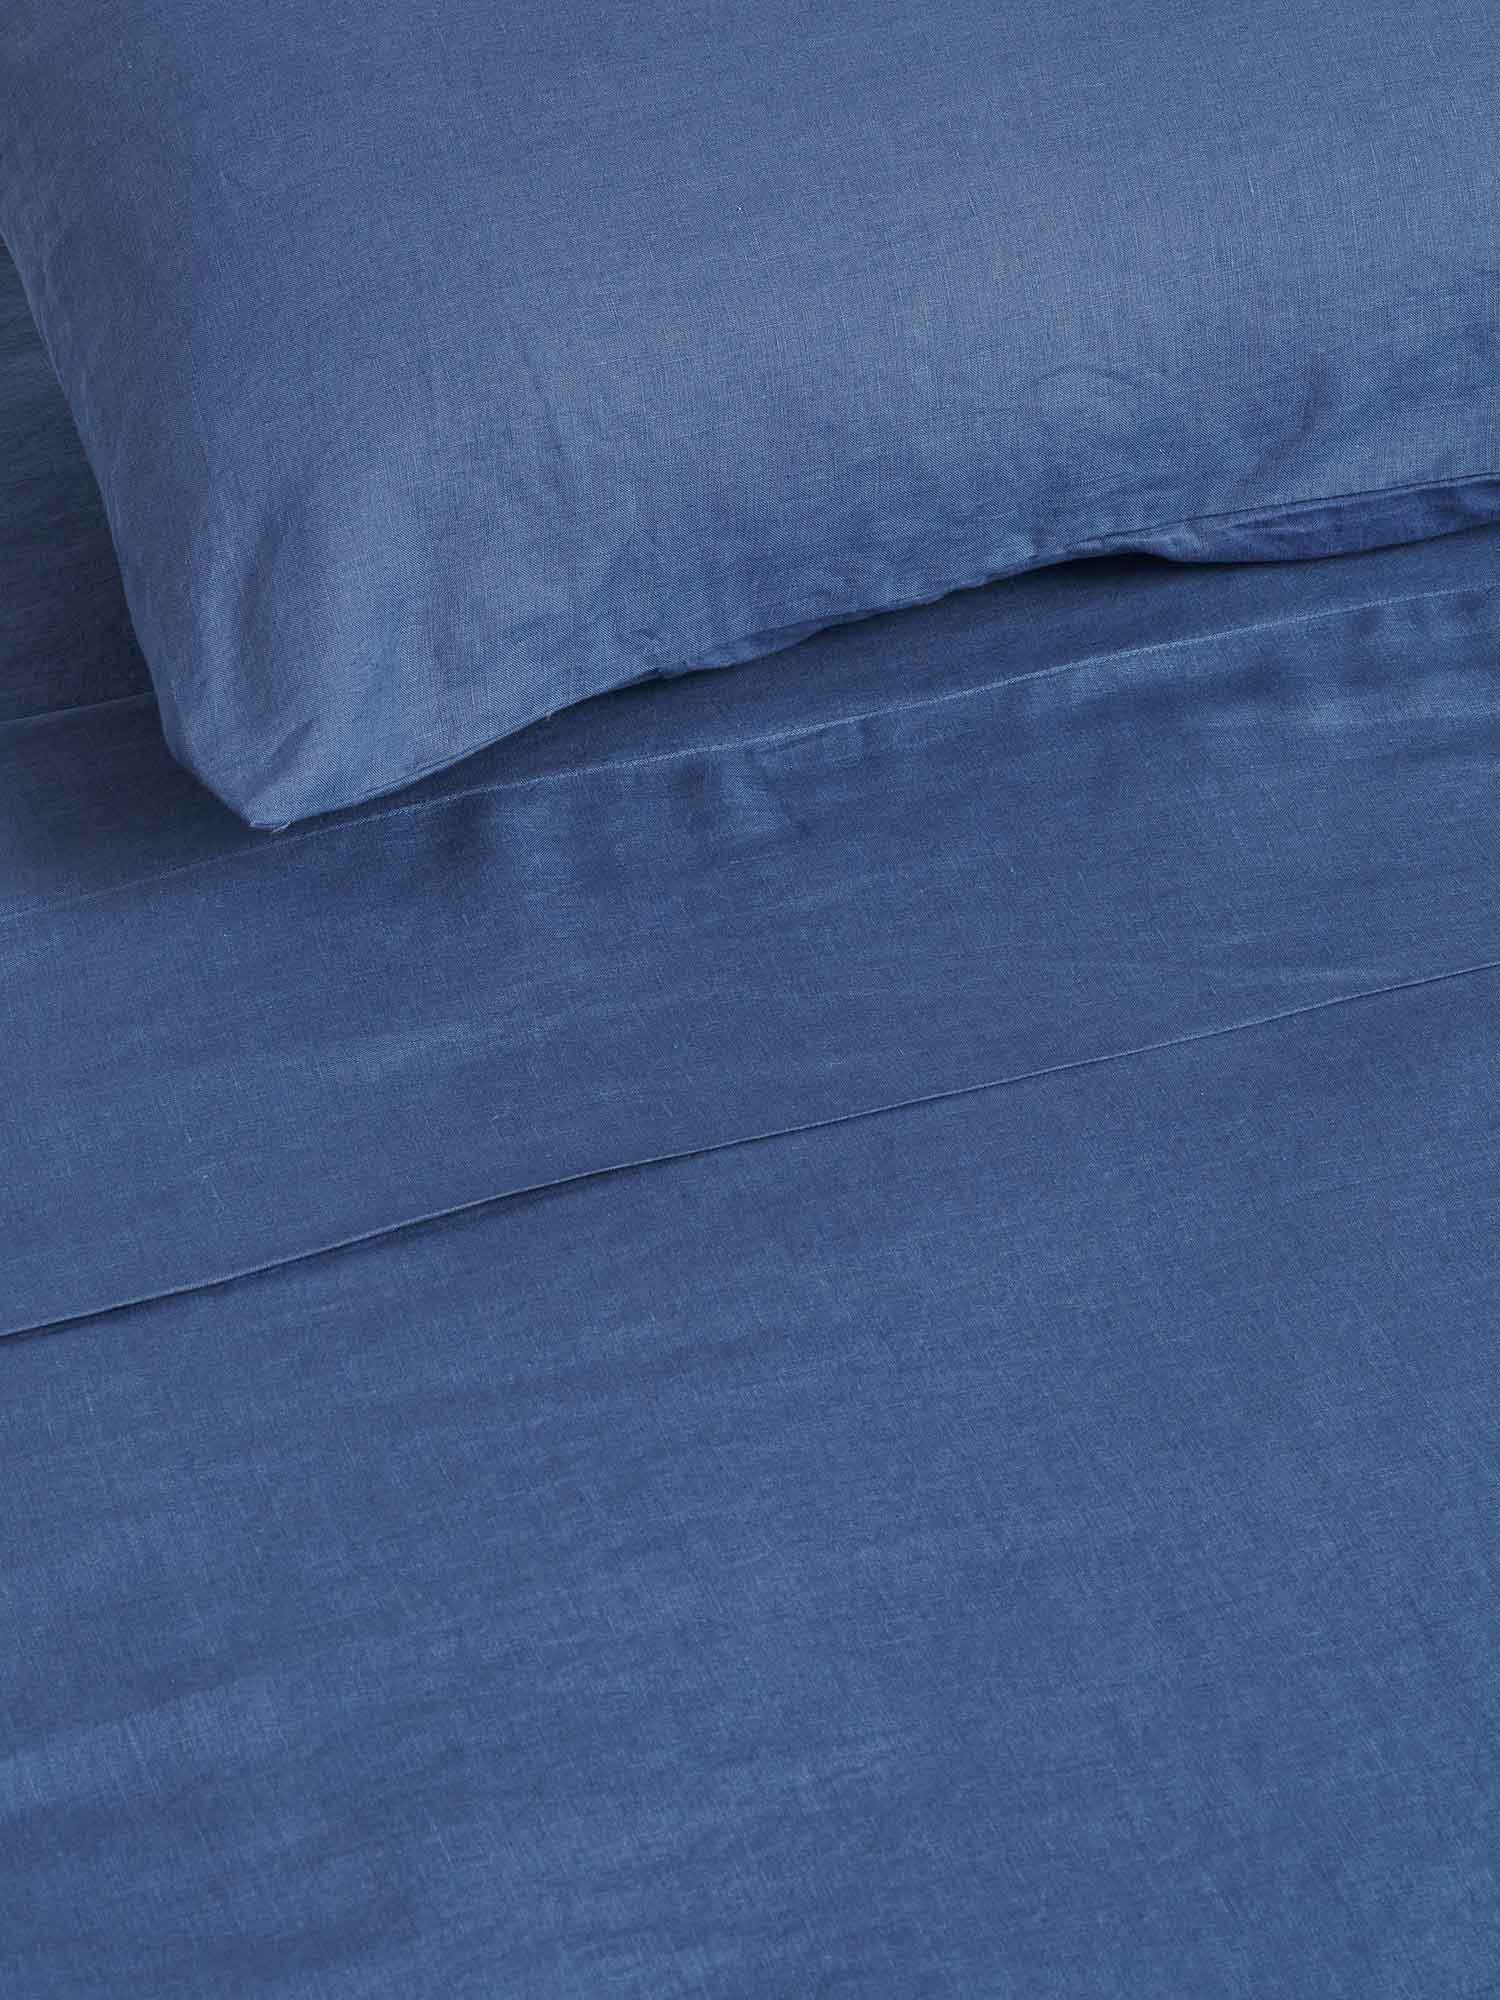 100% Linen Duvet Cover in Marine Blue